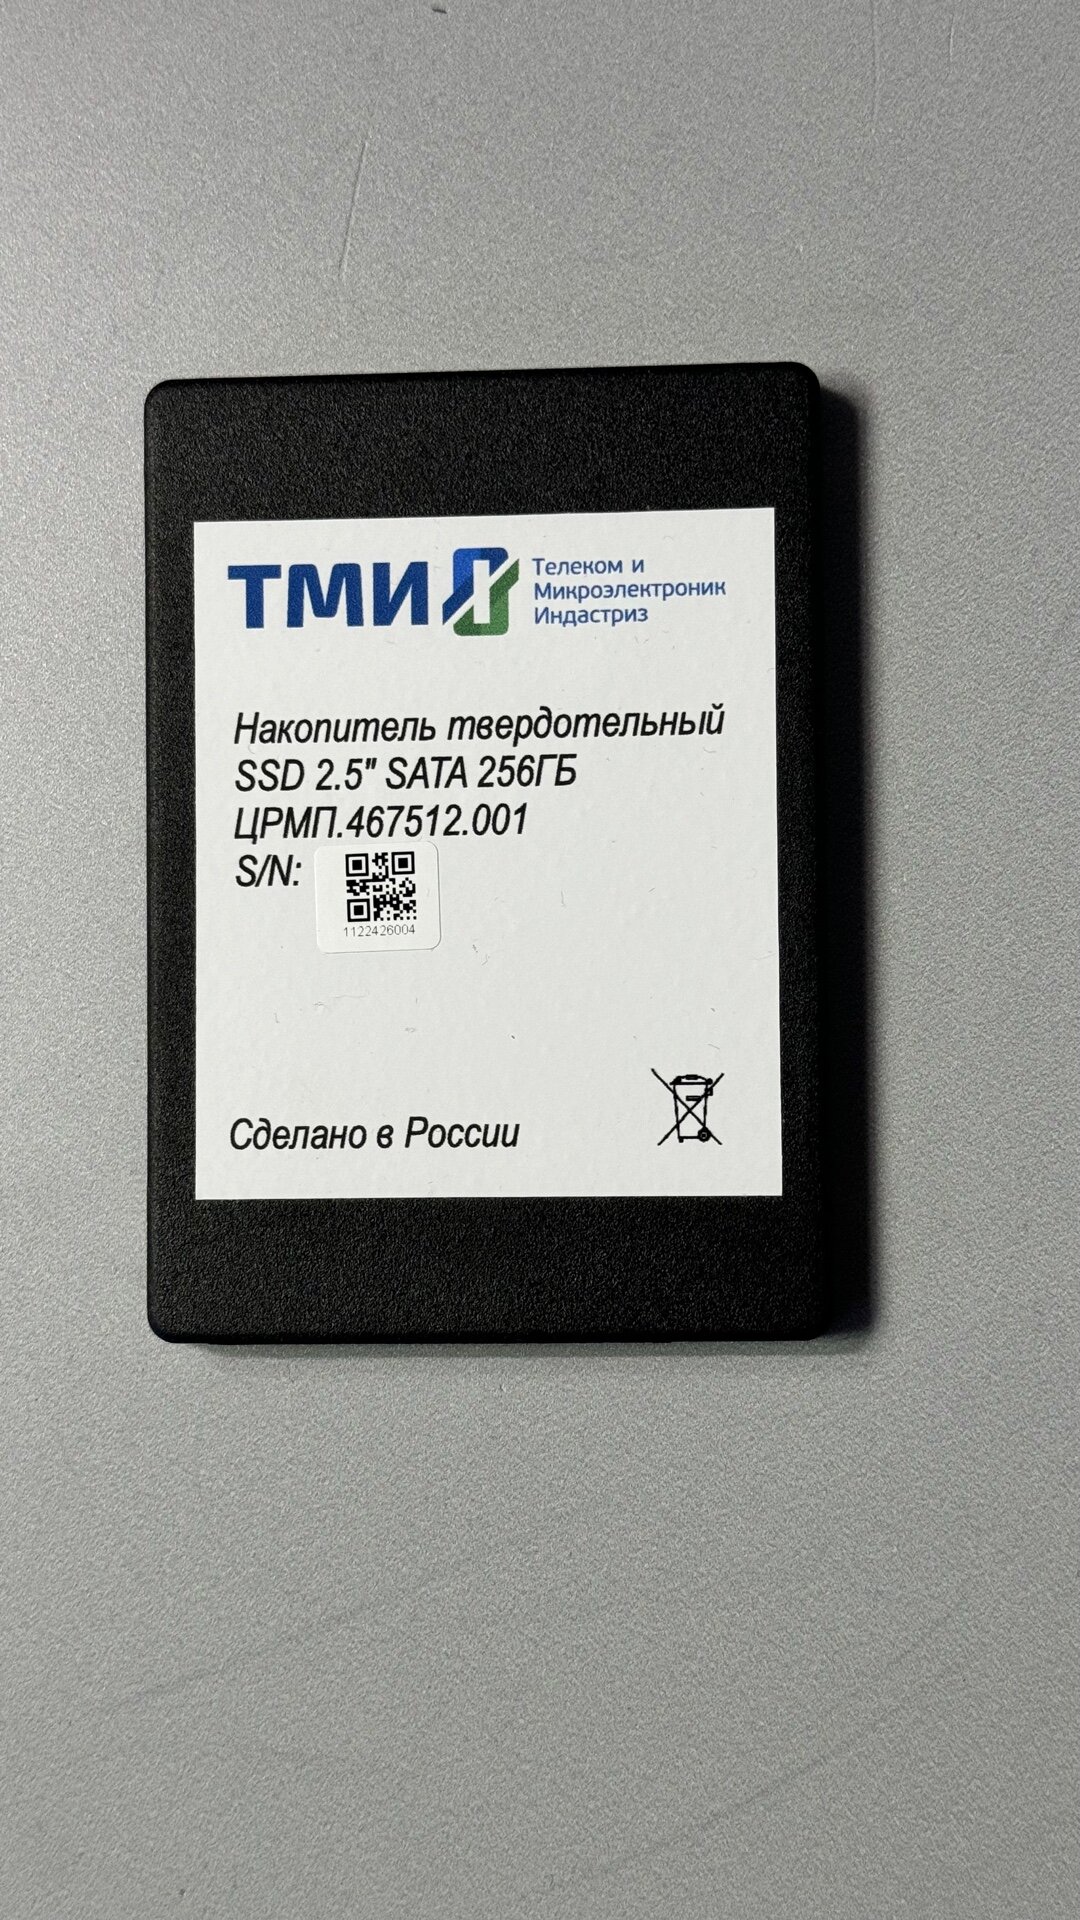 Накопитель SSD 2.5' ТМИ црмп.467512.001 256GB SATA 6Gb/s 3D TLC 560/510MB/s IOPS 59K/73K MTBF 3M